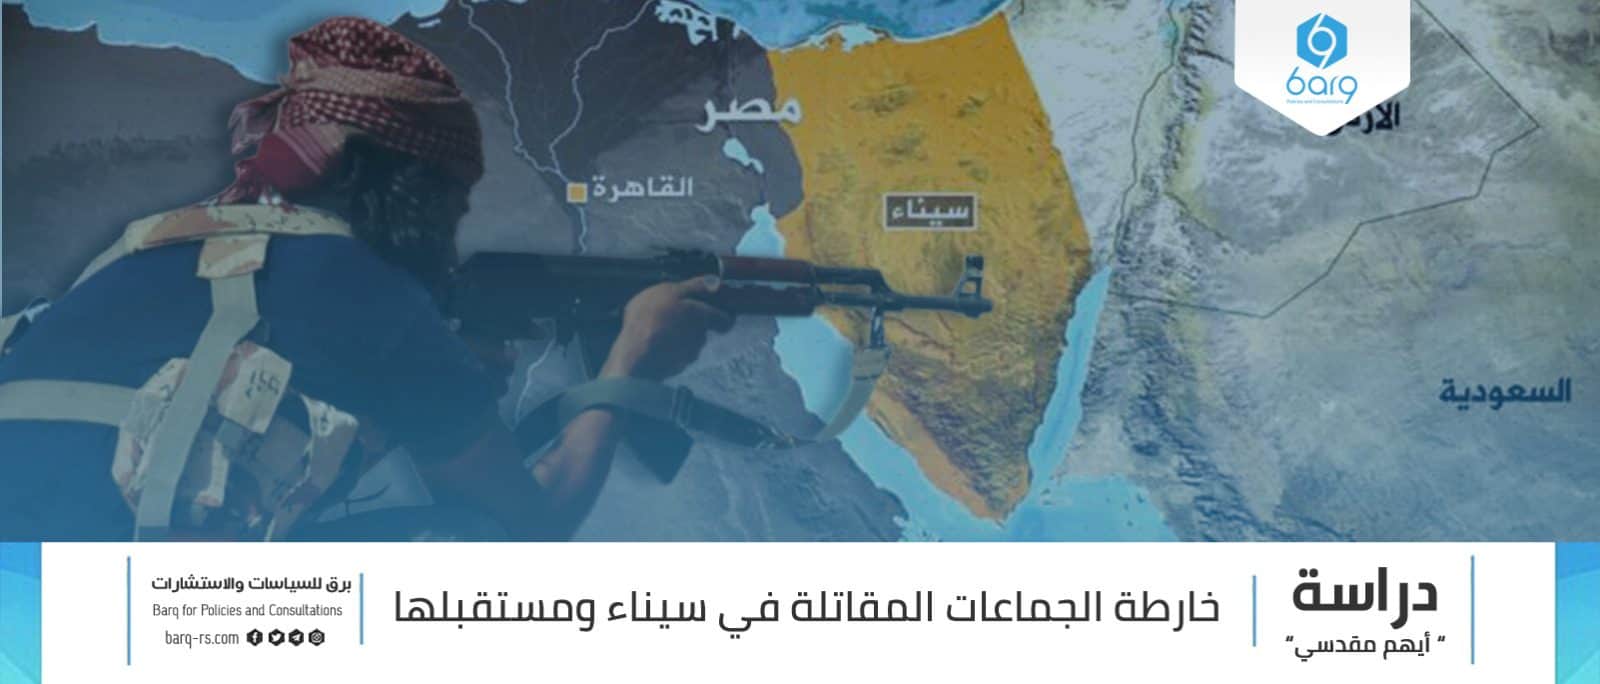 خارطة الجماعات المقاتلة في سيناء ومستقبلها Barq